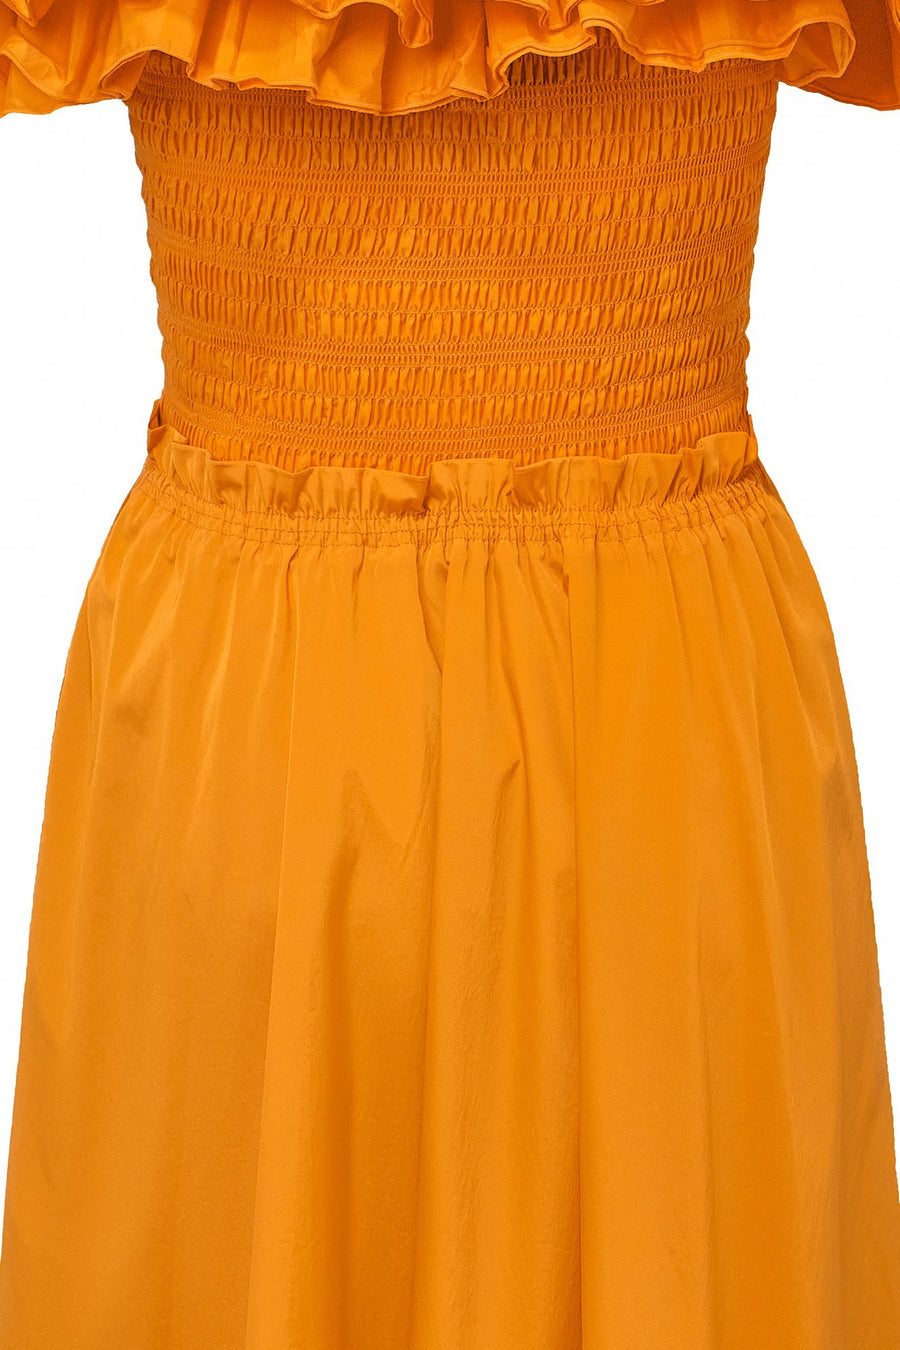 Ruffle Bustier Dress - Orange